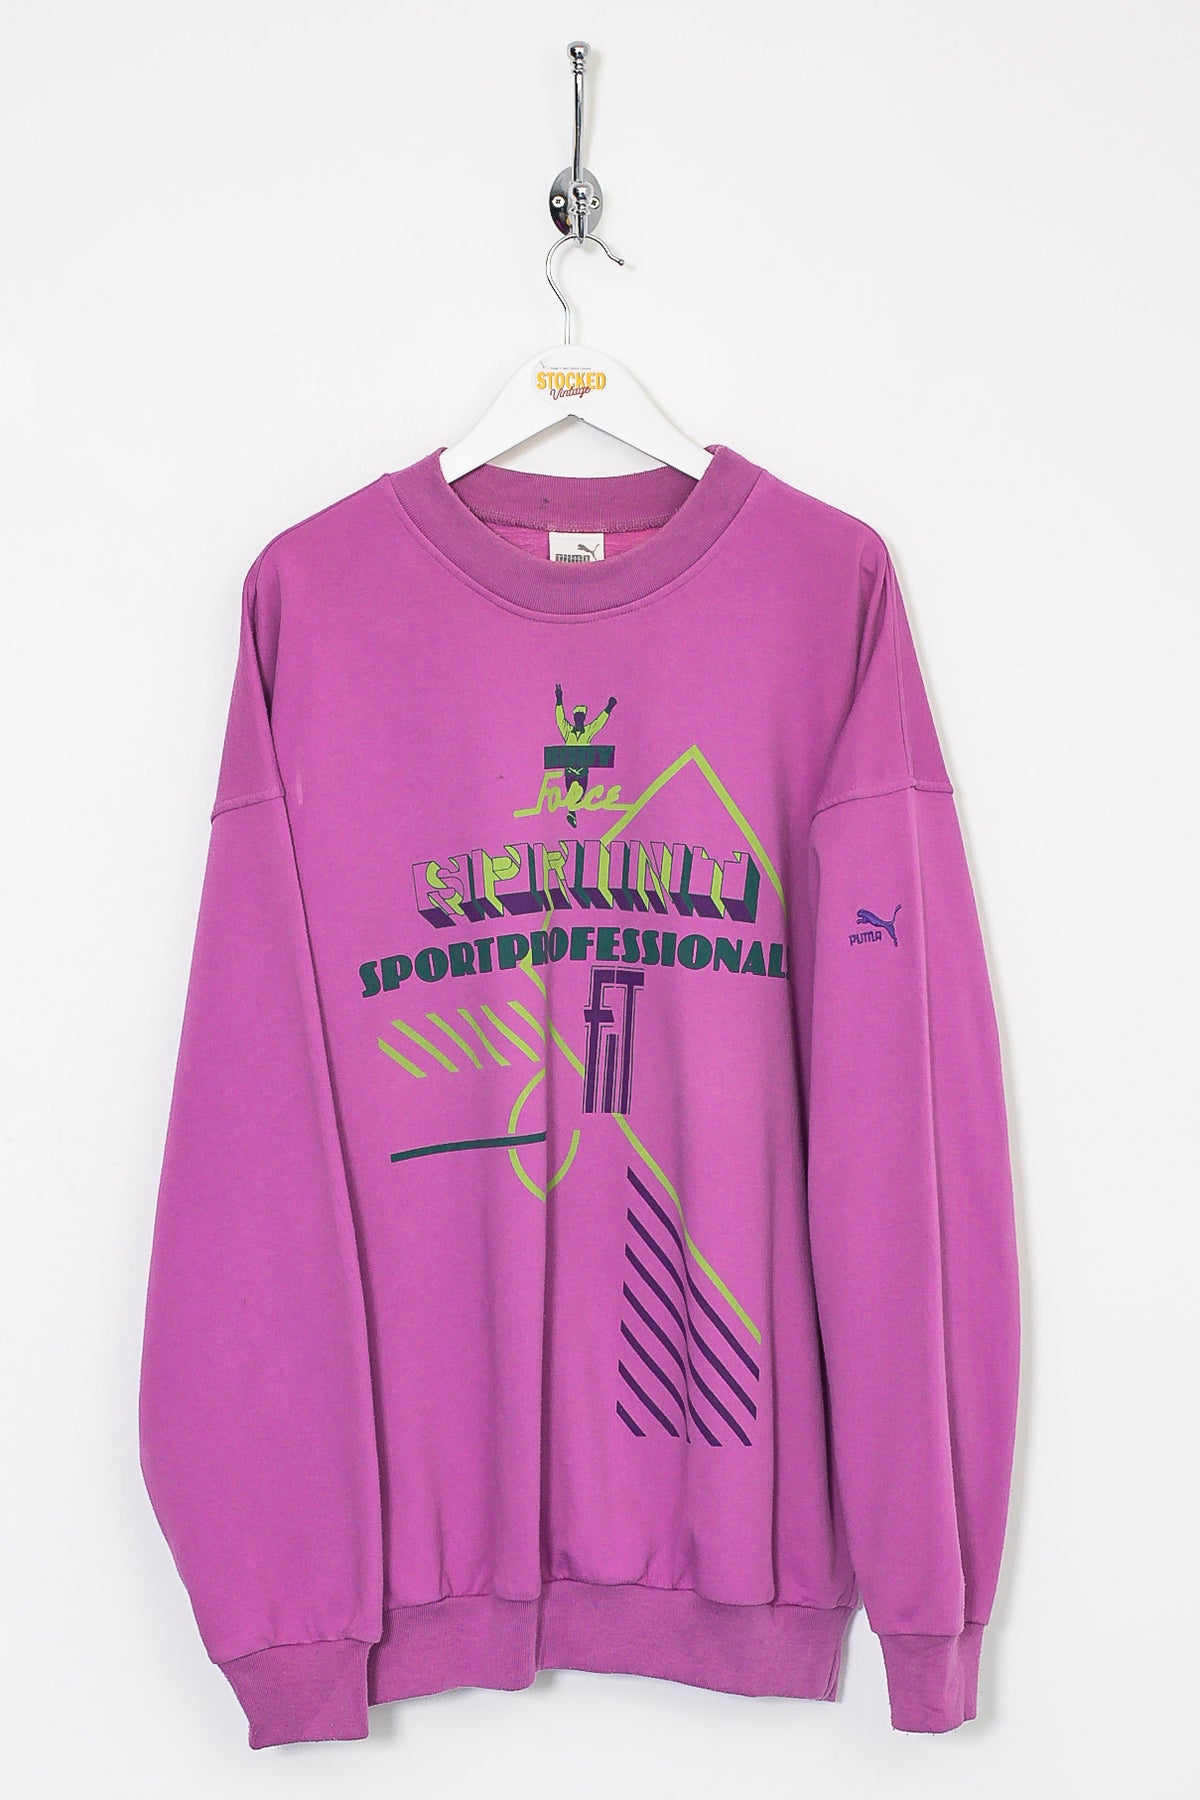 90s Puma Sweatshirt (L)